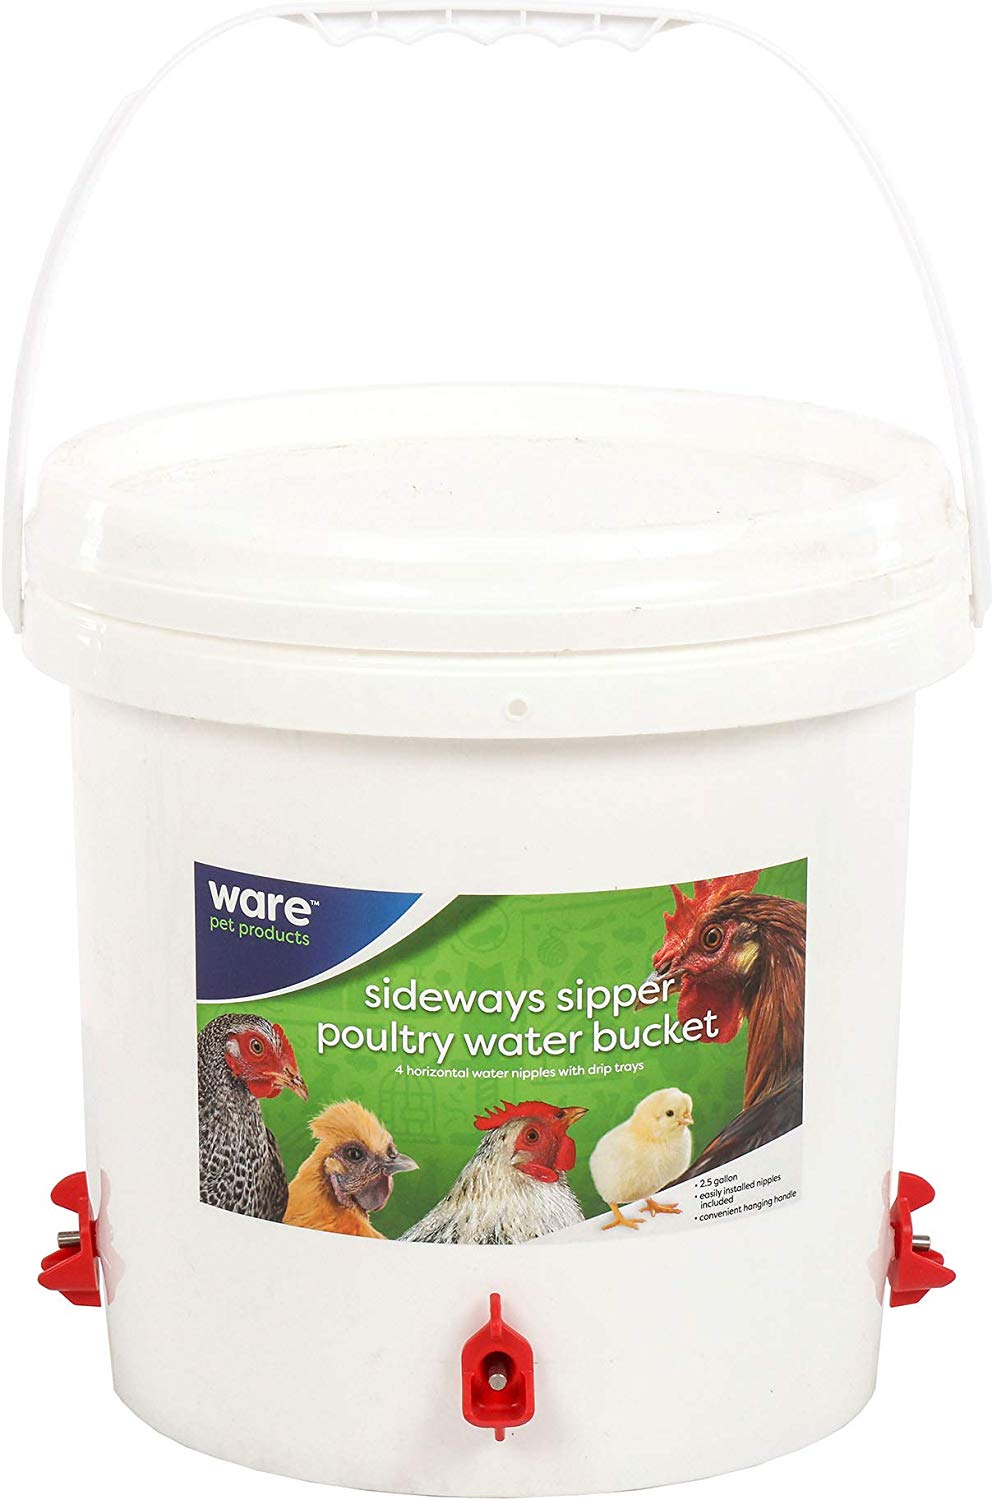 Sideways Sipper - Poultry Water Bucket